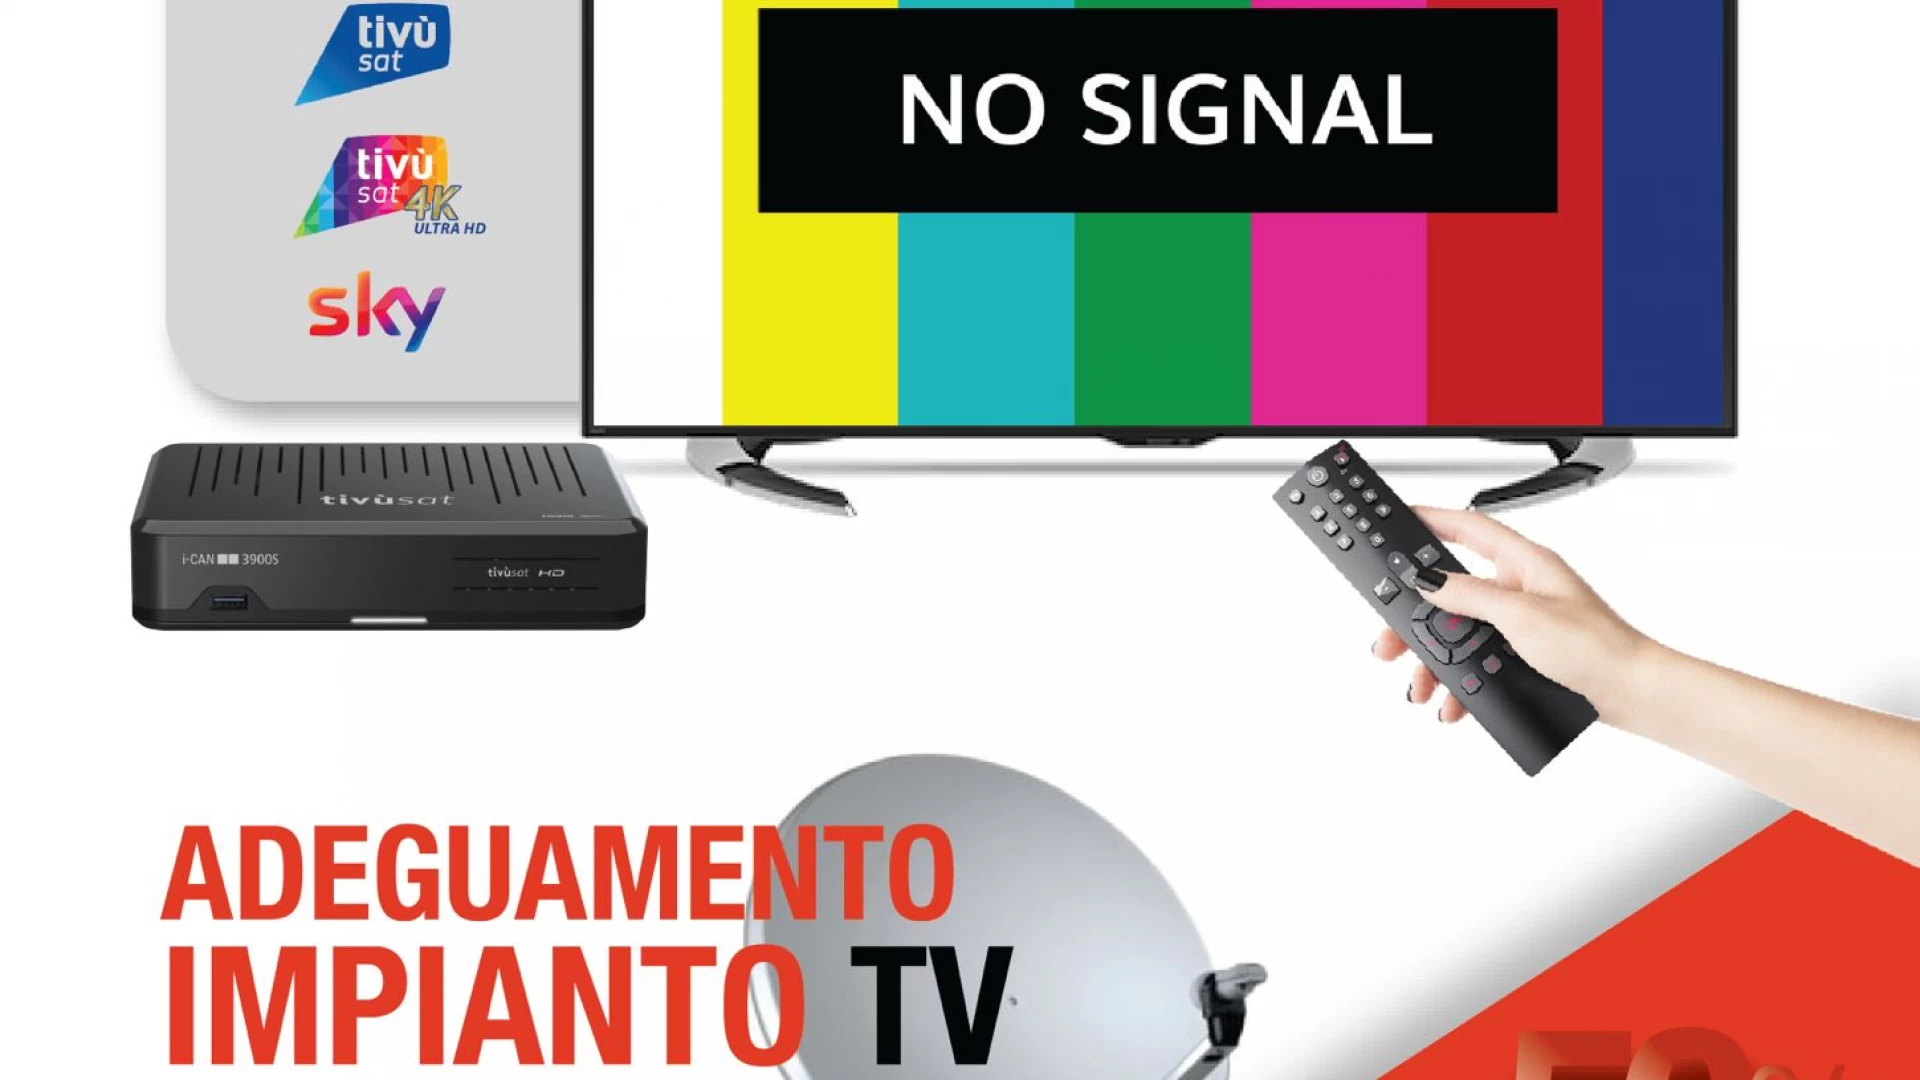 Adegua il tuo impianto Tv alle nuove normative europee. All’intervento ci pensa Net Com Impianti.